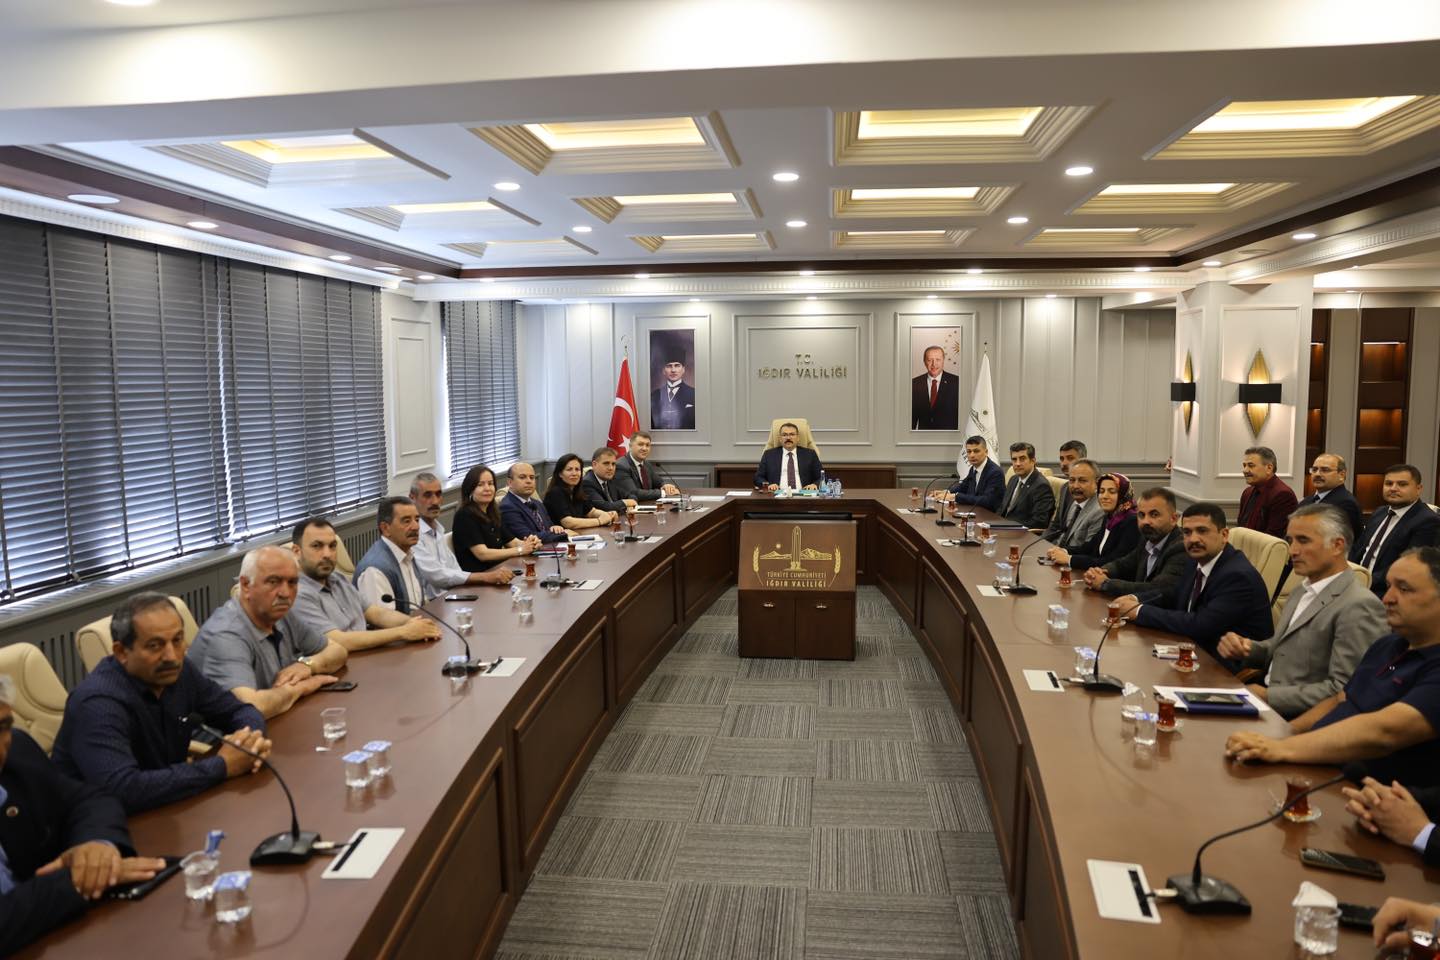 Vali Ercan Turan, İlçe Merkezinde Toplantı Gerçekleştirdi